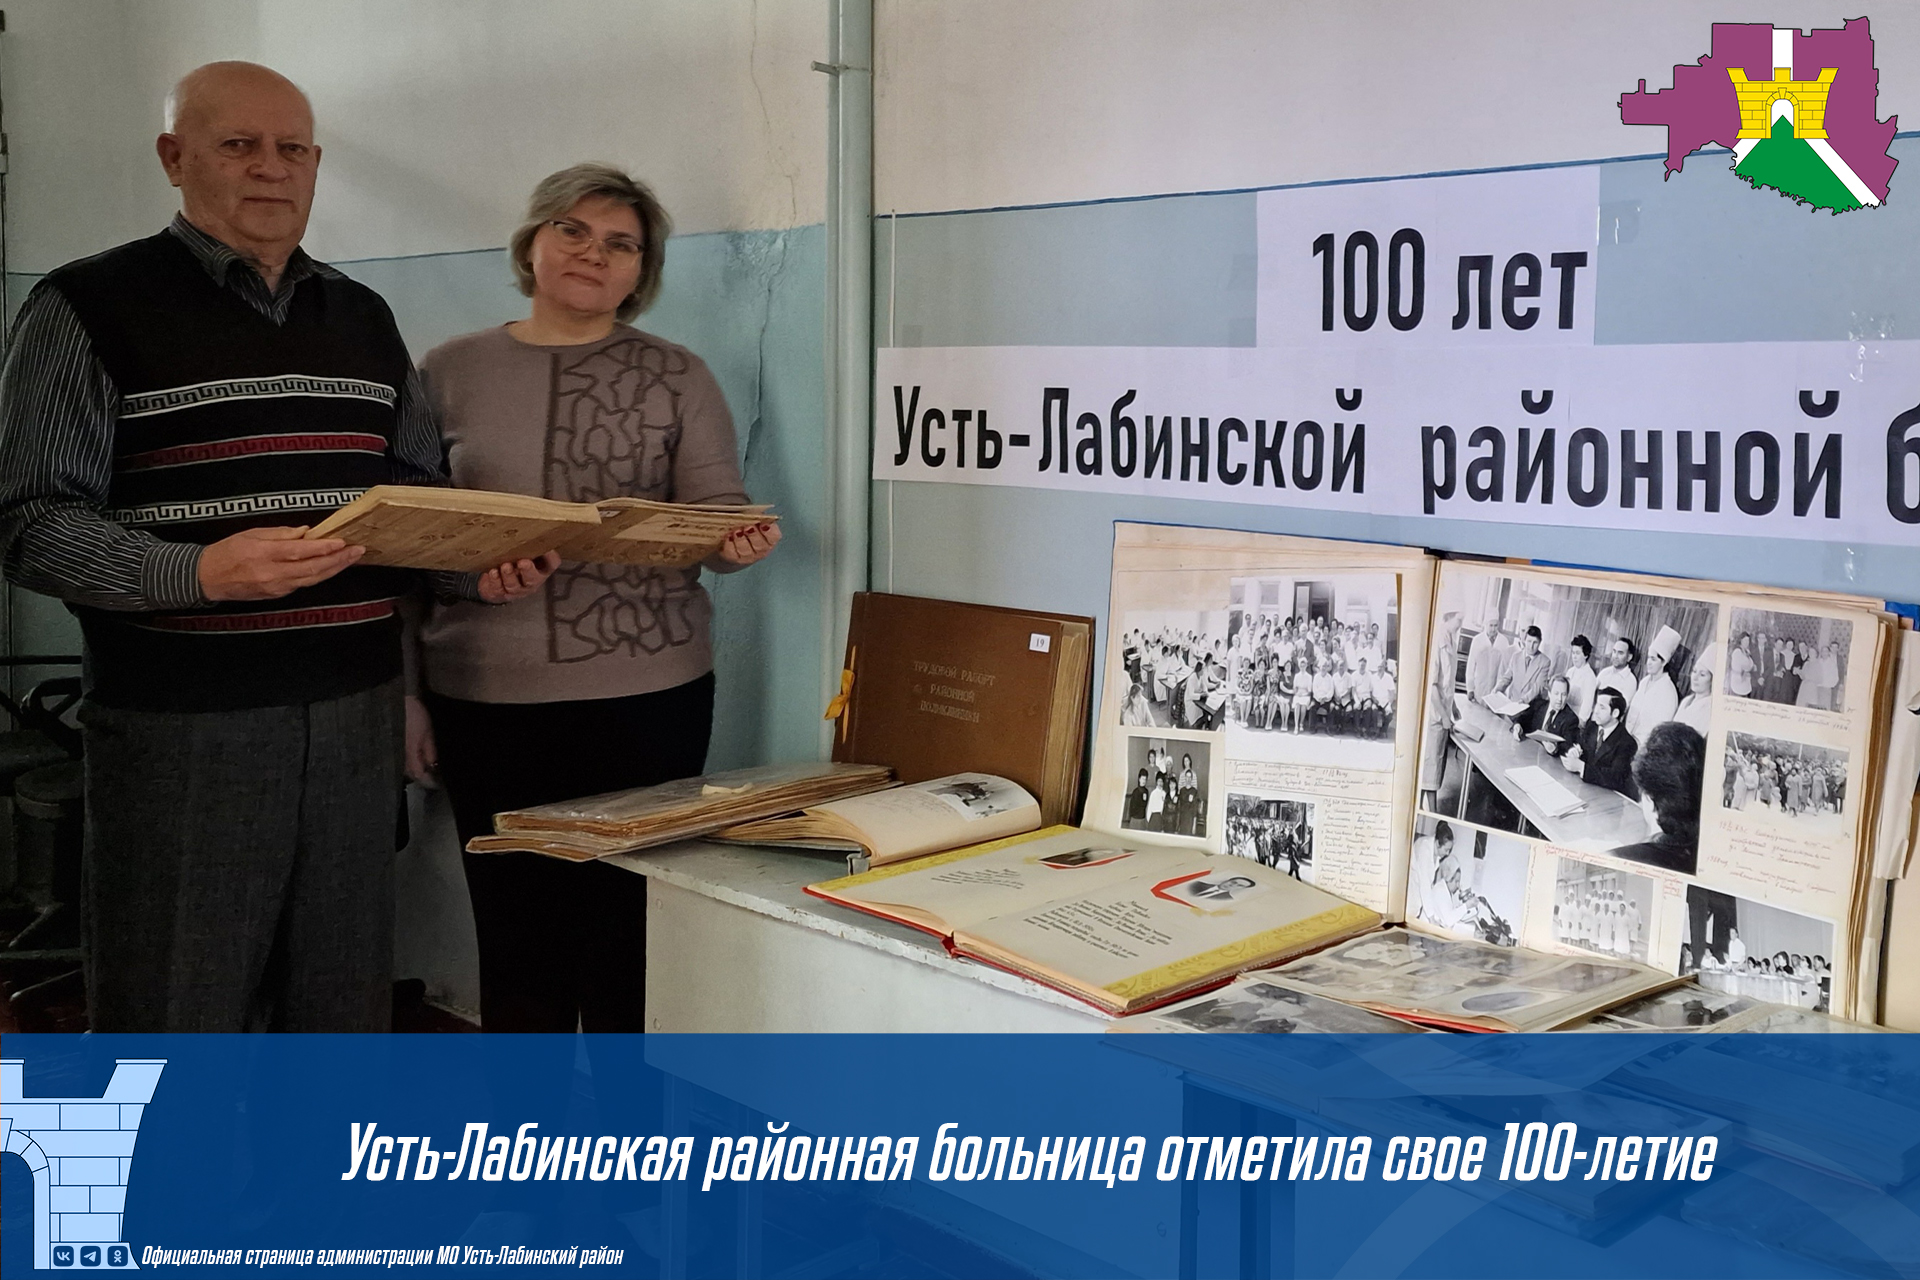 Усть-Лабинская районная больница отметила свое 100-летие!